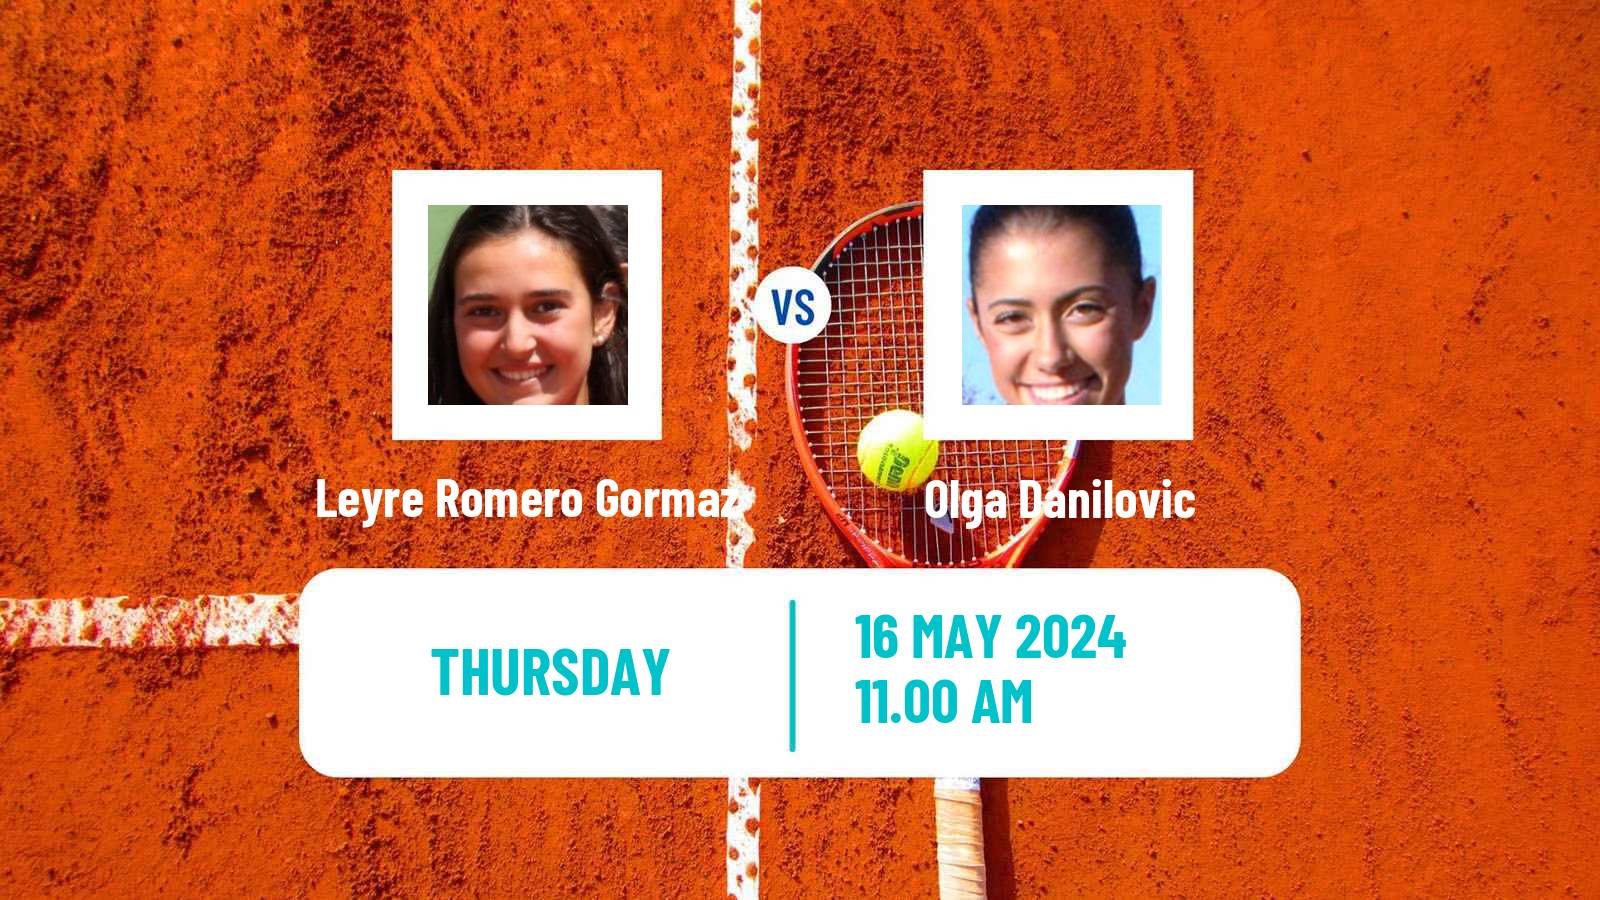 Tennis ITF W100 Madrid Women Leyre Romero Gormaz - Olga Danilovic